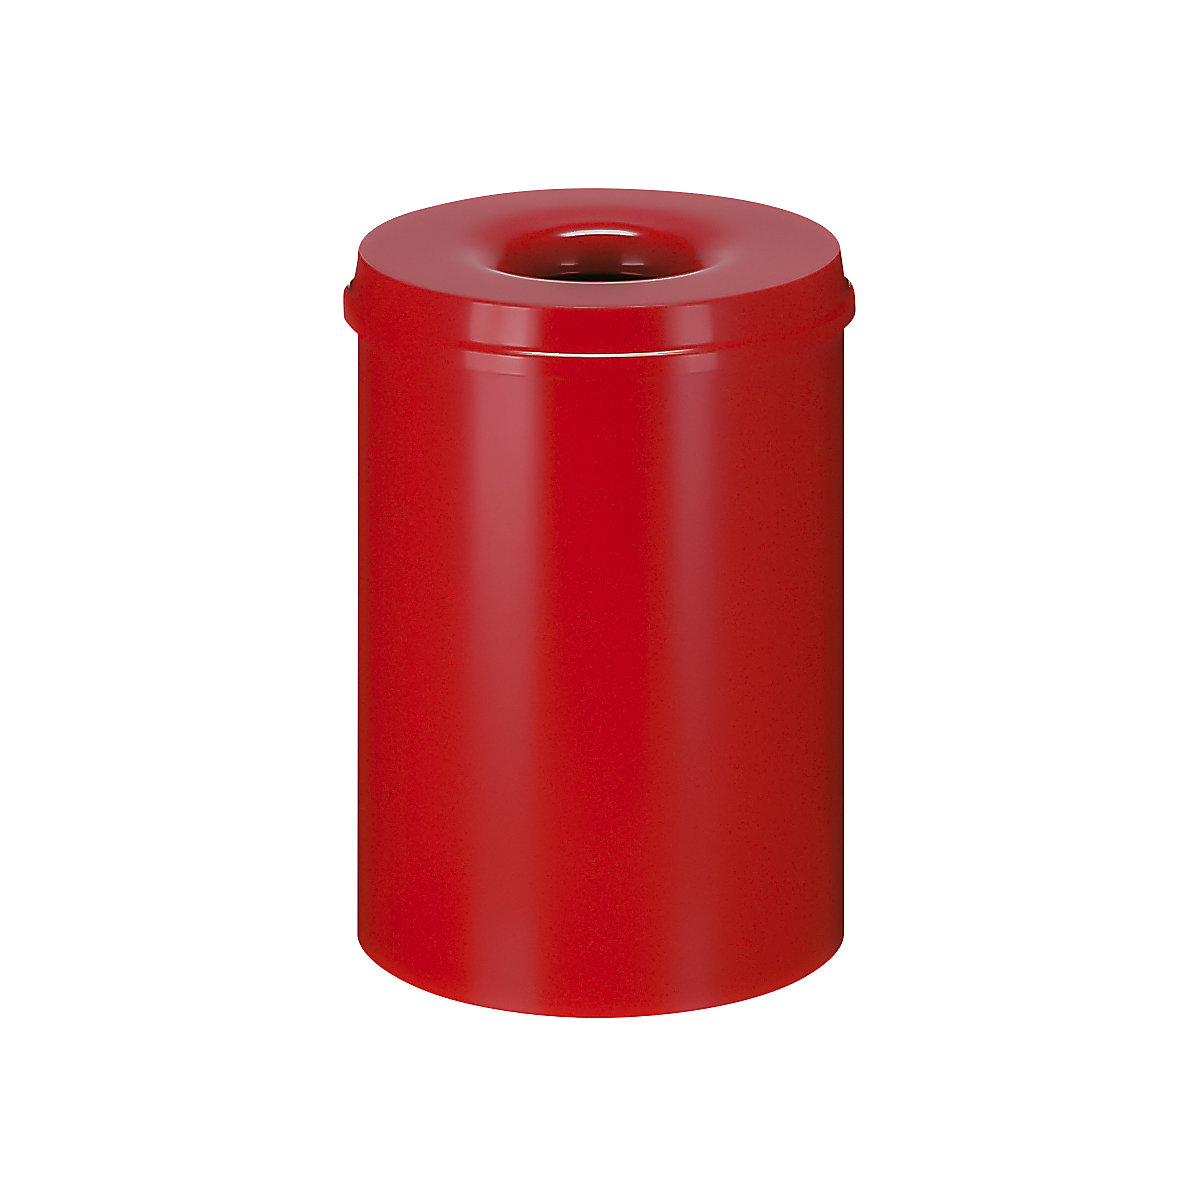 Sicherheits-Papierkorb, Stahl, selbstlöschend, Volumen 30 l, HxØ 470 x 335 mm, Korpus rot / Löschkopf rot-9